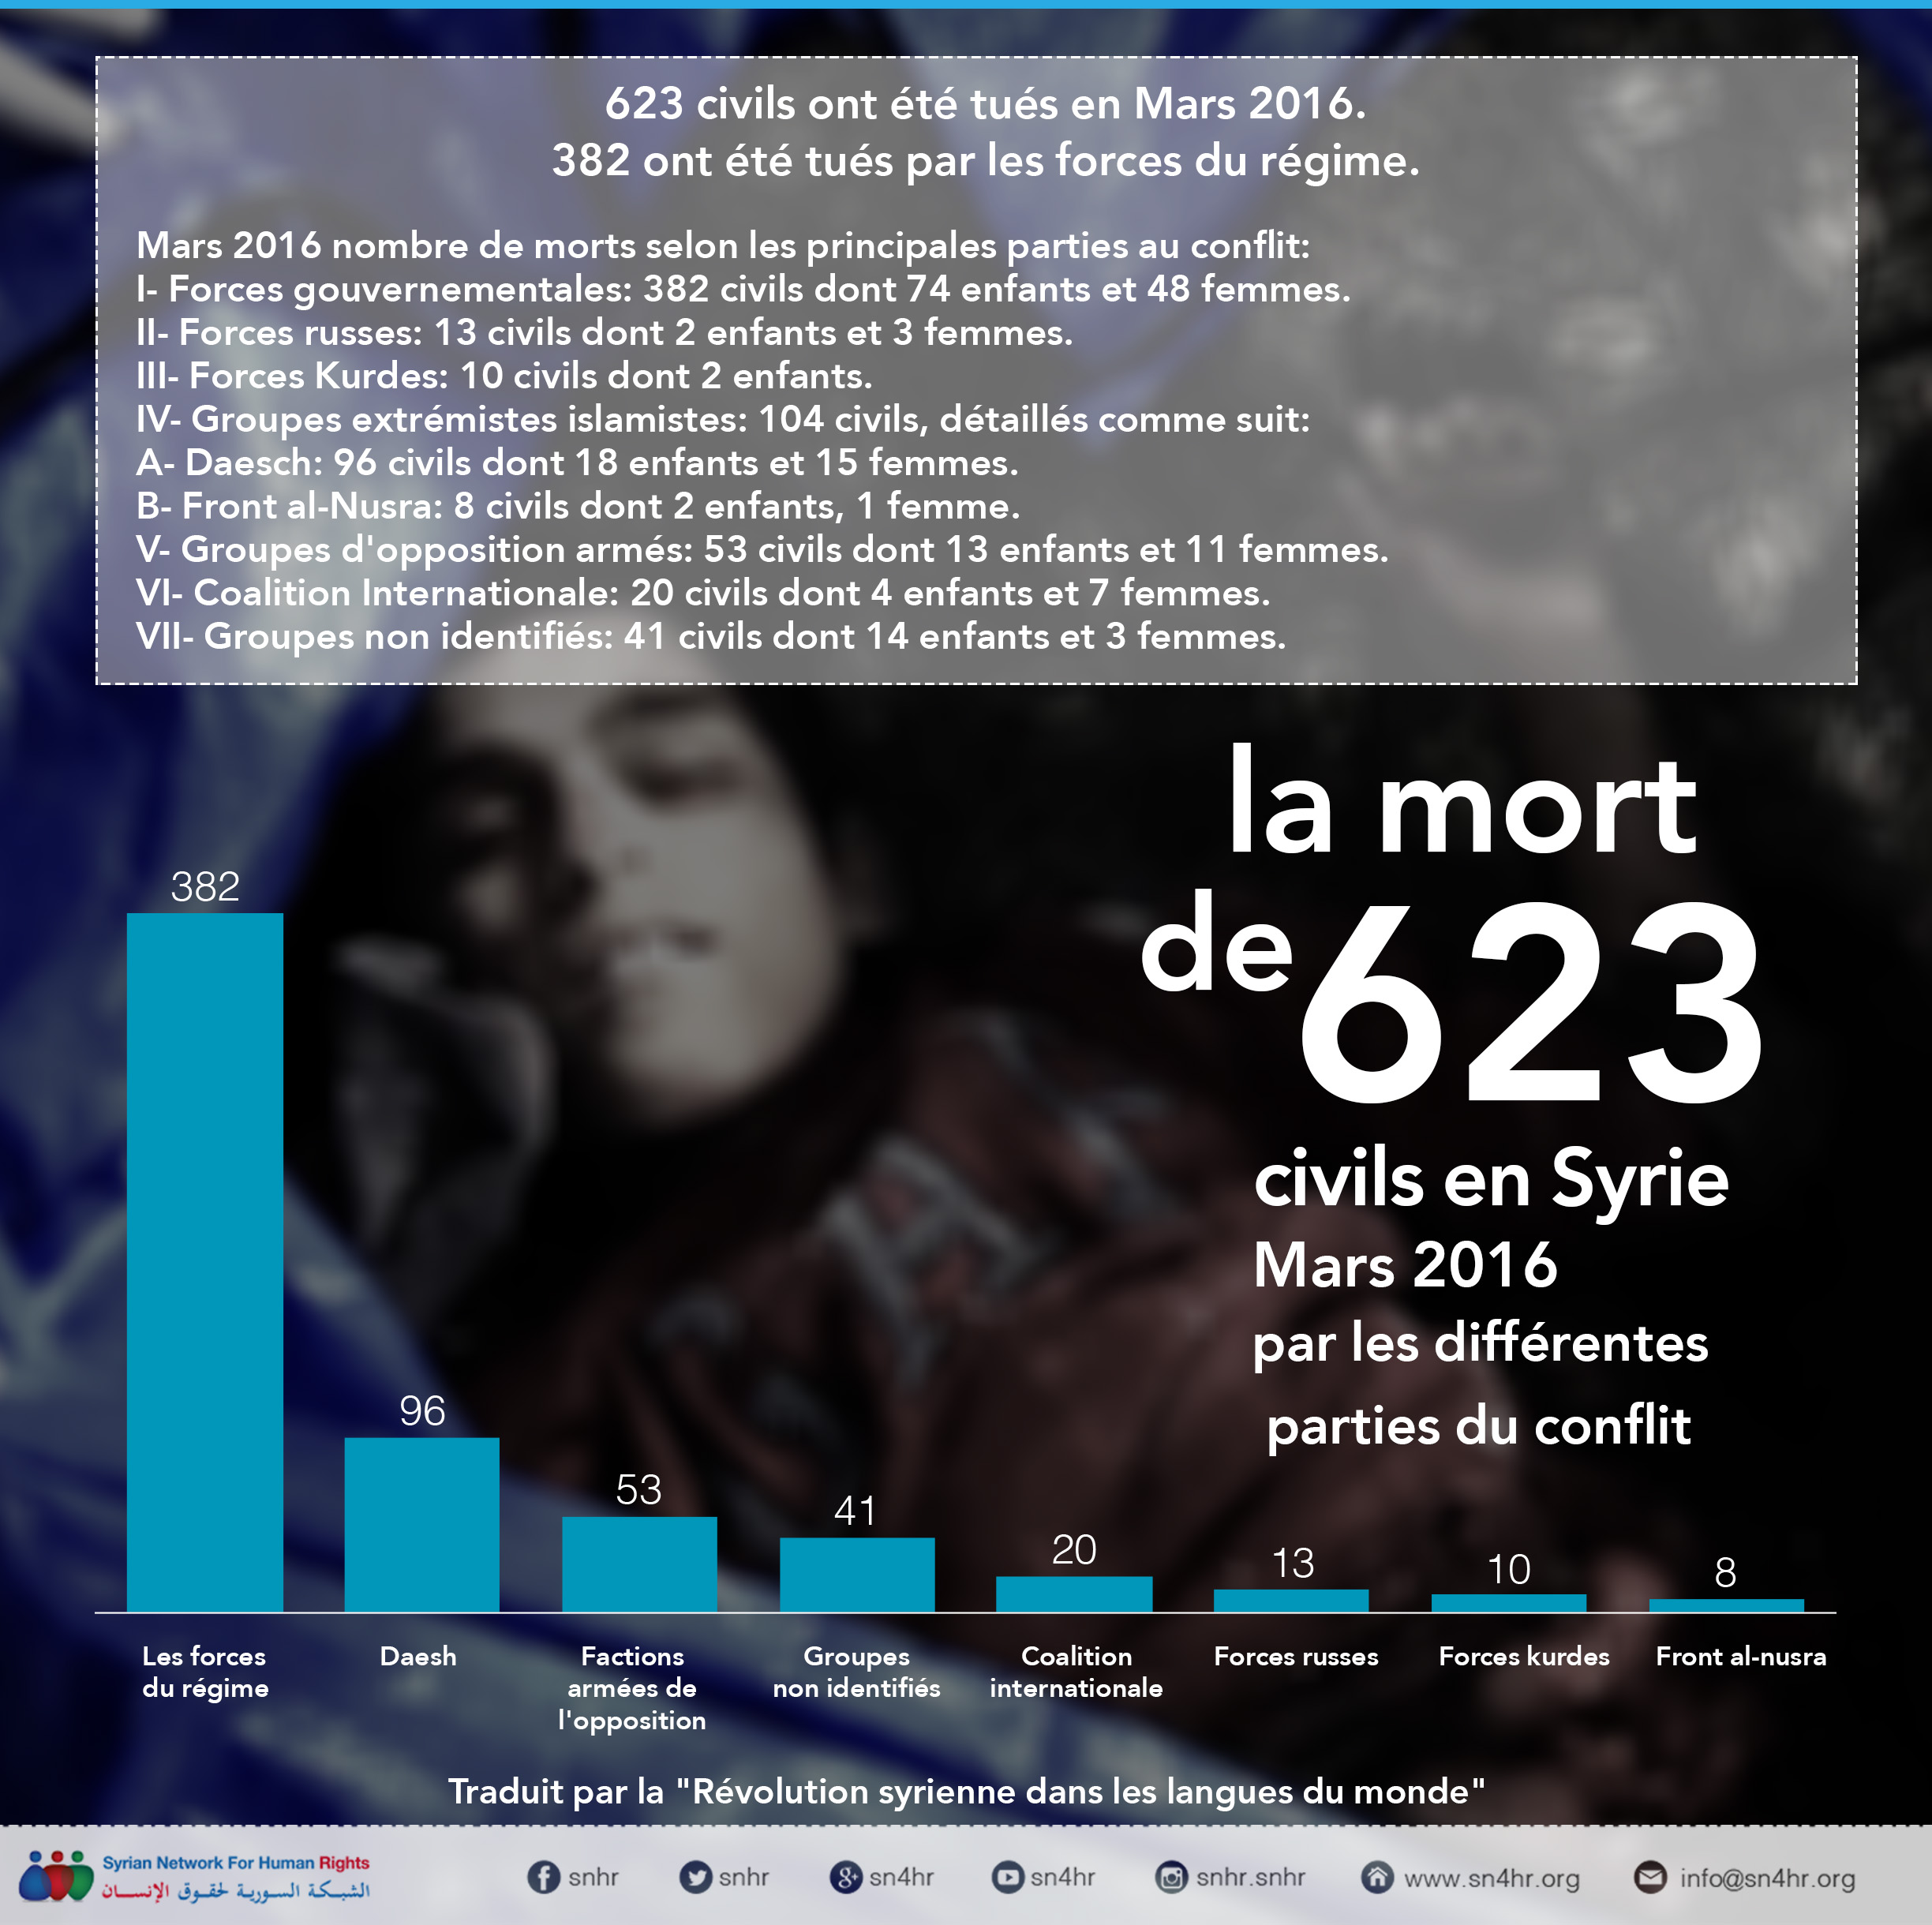 623 civils ont été tués en Mars 2016